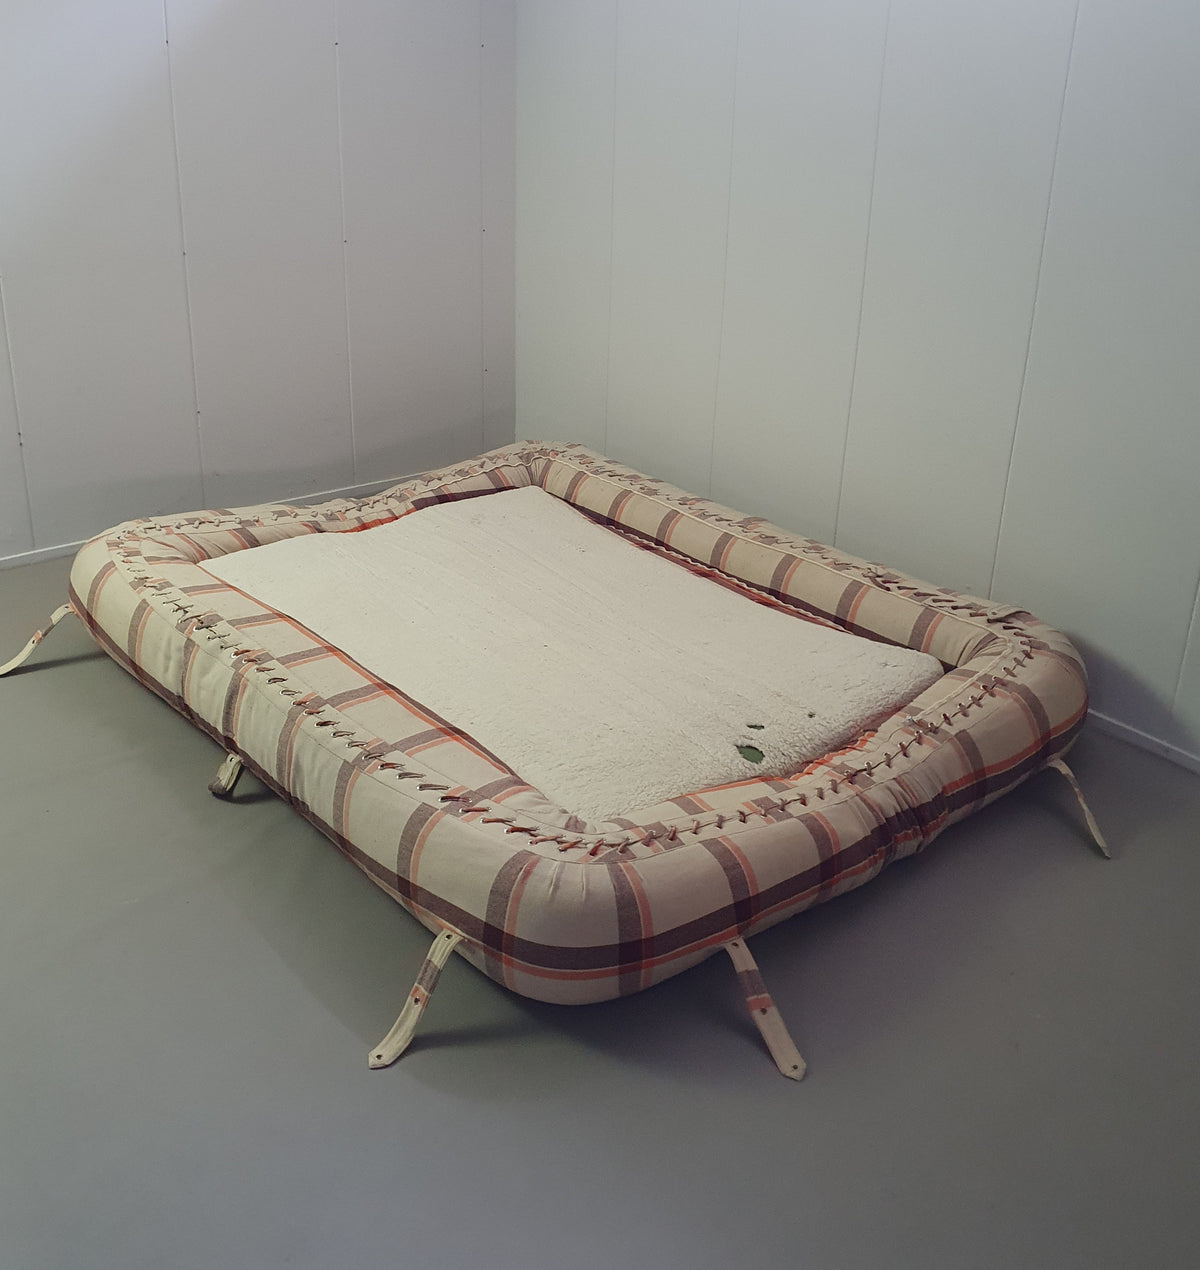 Giovanetti sofa wide 250 cm 3 seat.
Wonderful giovannetti
Anfibio sofa by Alessandro Becchi for Giovannetti, 1970s